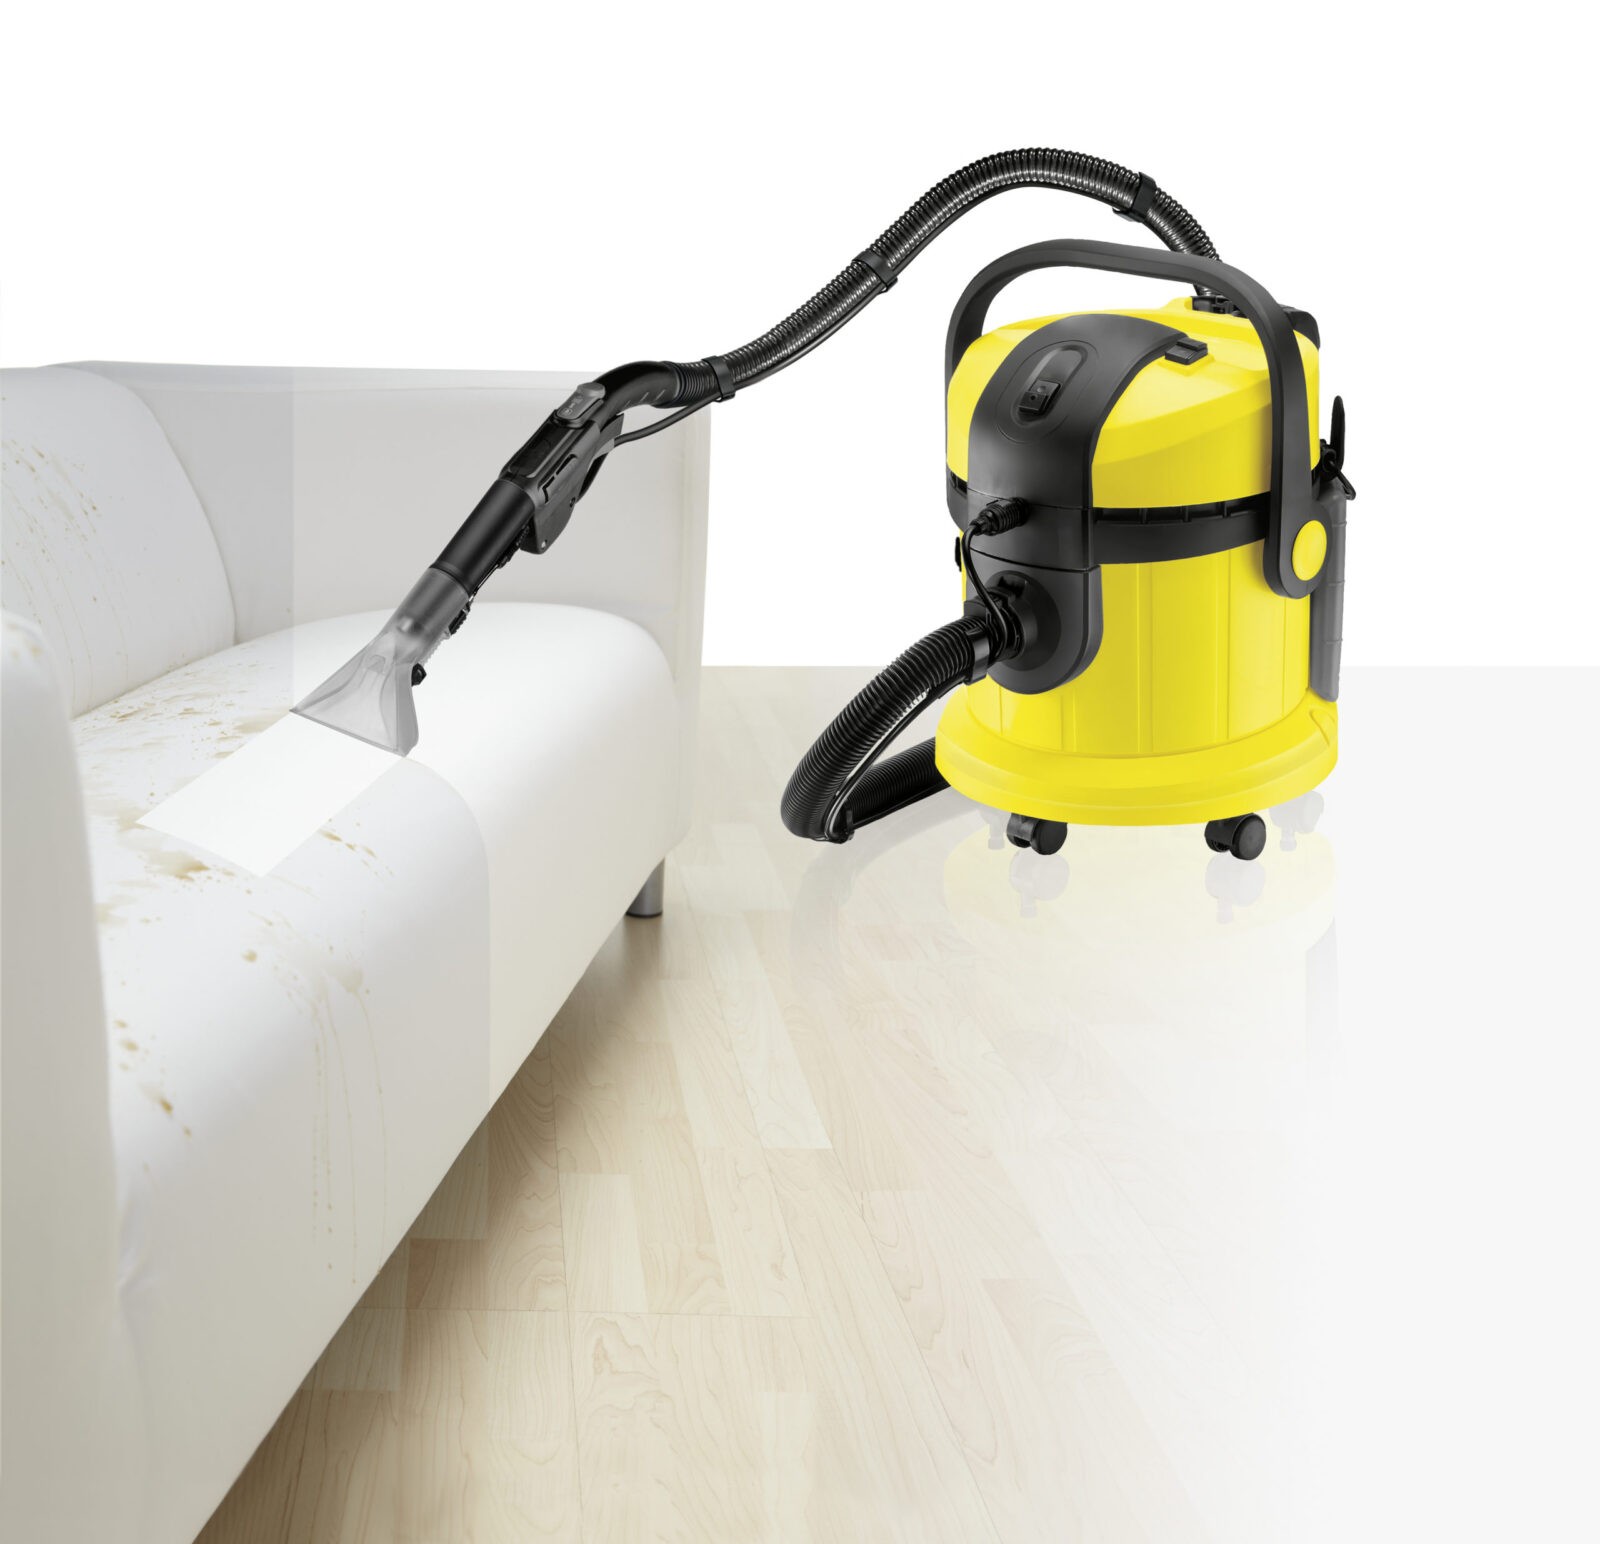 Carpet and textile care machine Kärcher SE 4002 - PS Auction - We